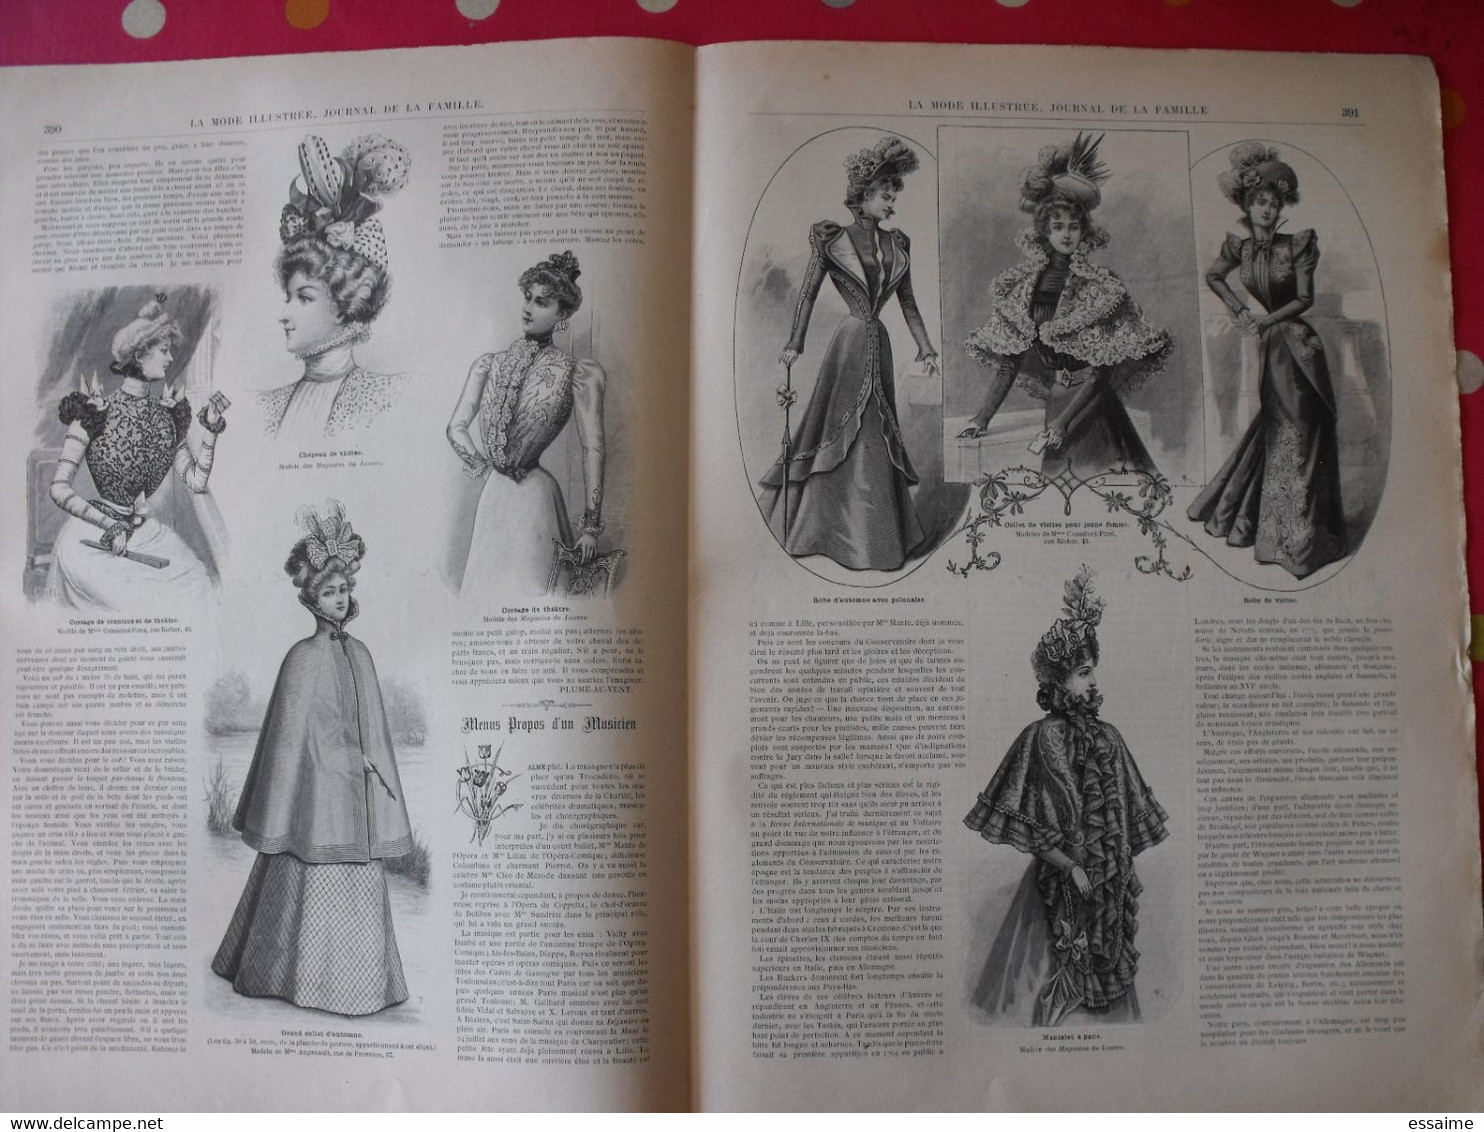 4 revues la mode illustrée, journal de la famille.  n° 32,33,34,35 de 1898. couverture en couleur. jolies gravures